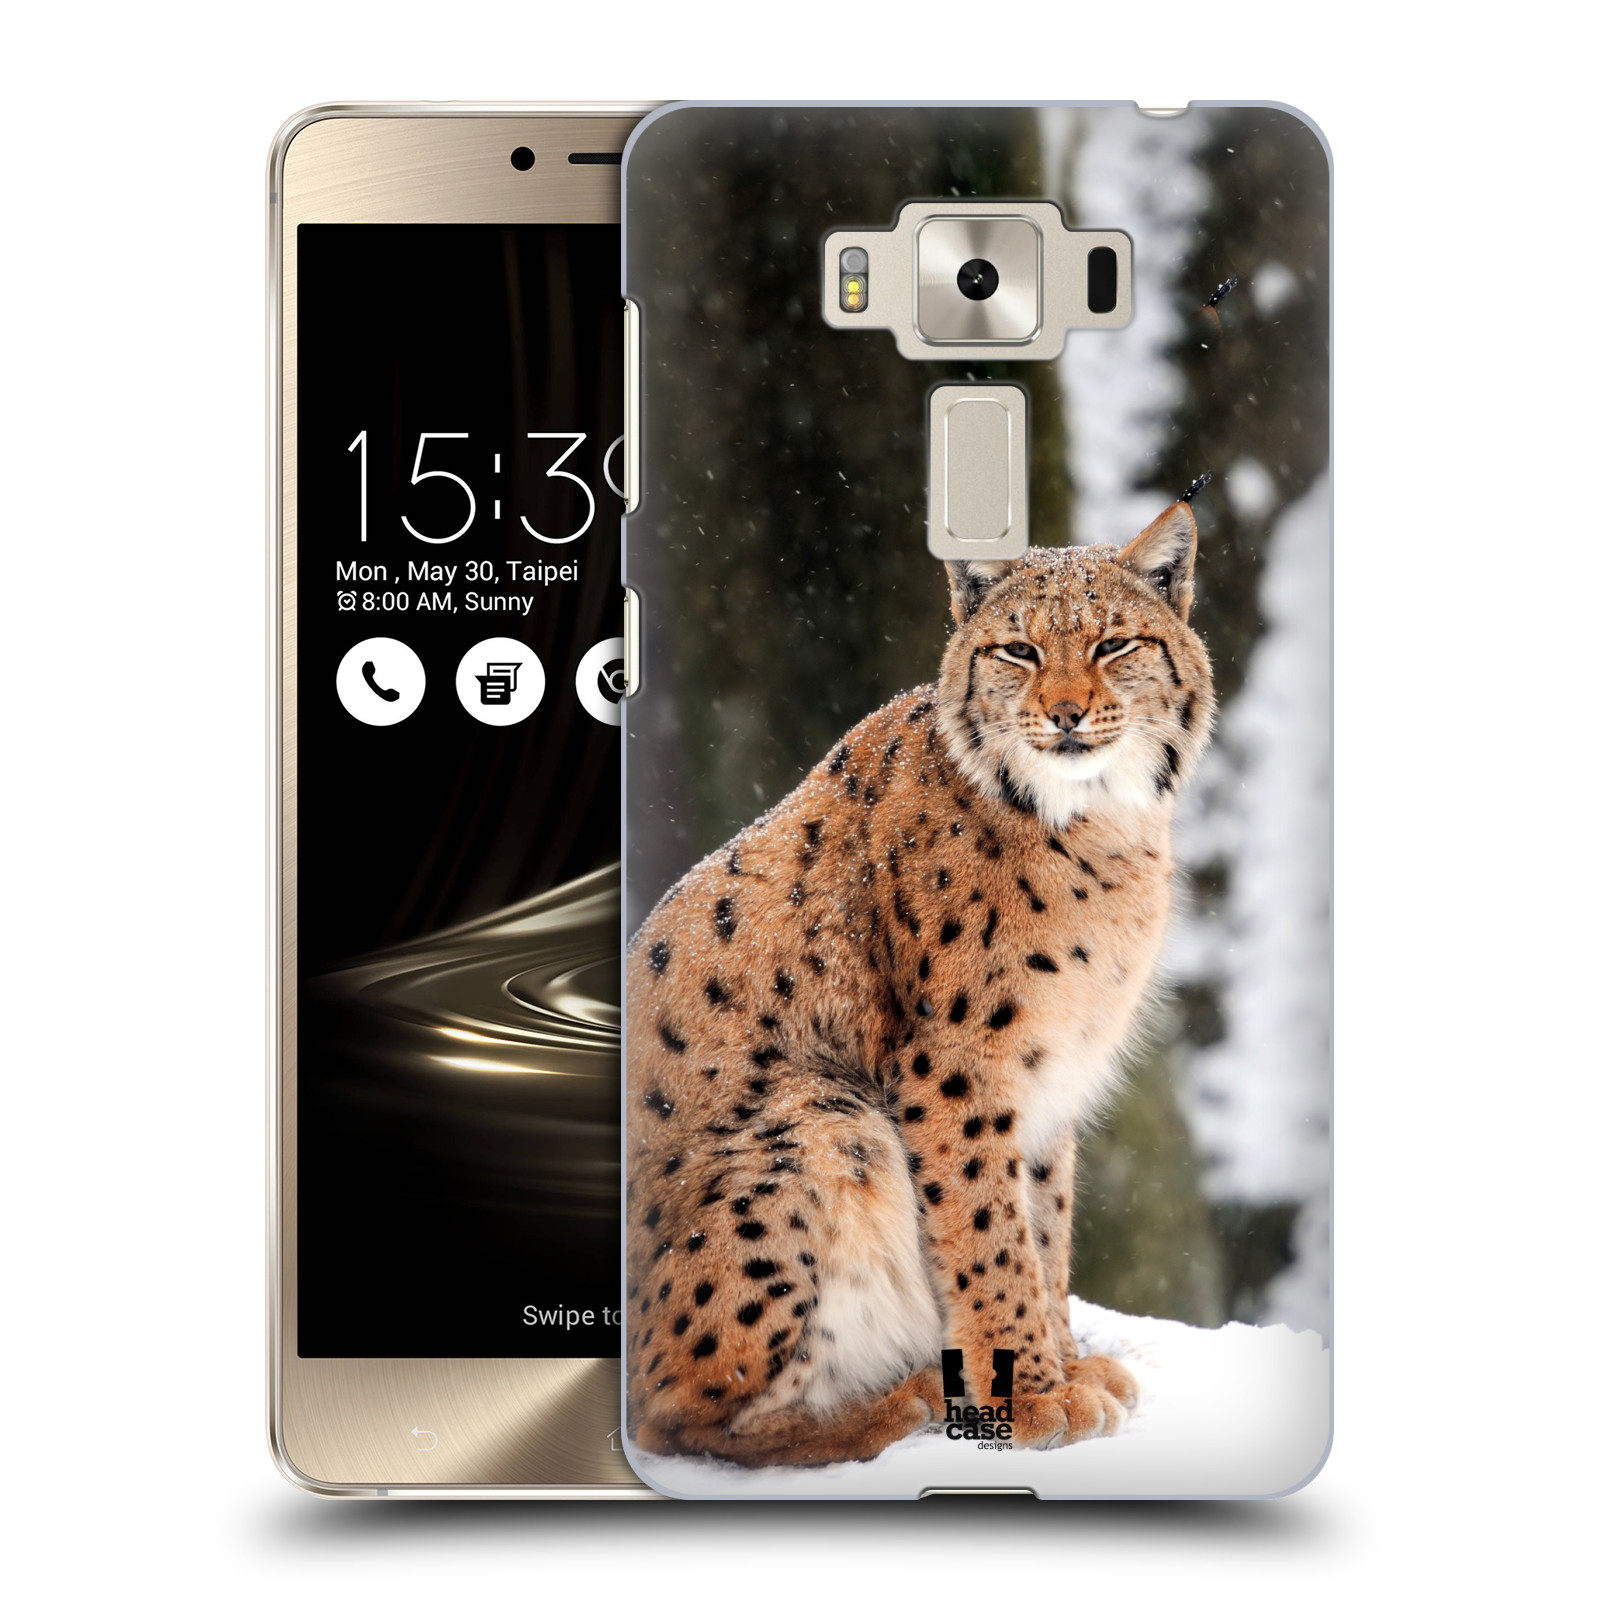 HEAD CASE plastový obal na mobil Asus Zenfone 3 DELUXE ZS550KL vzor slavná zvířata foto rys